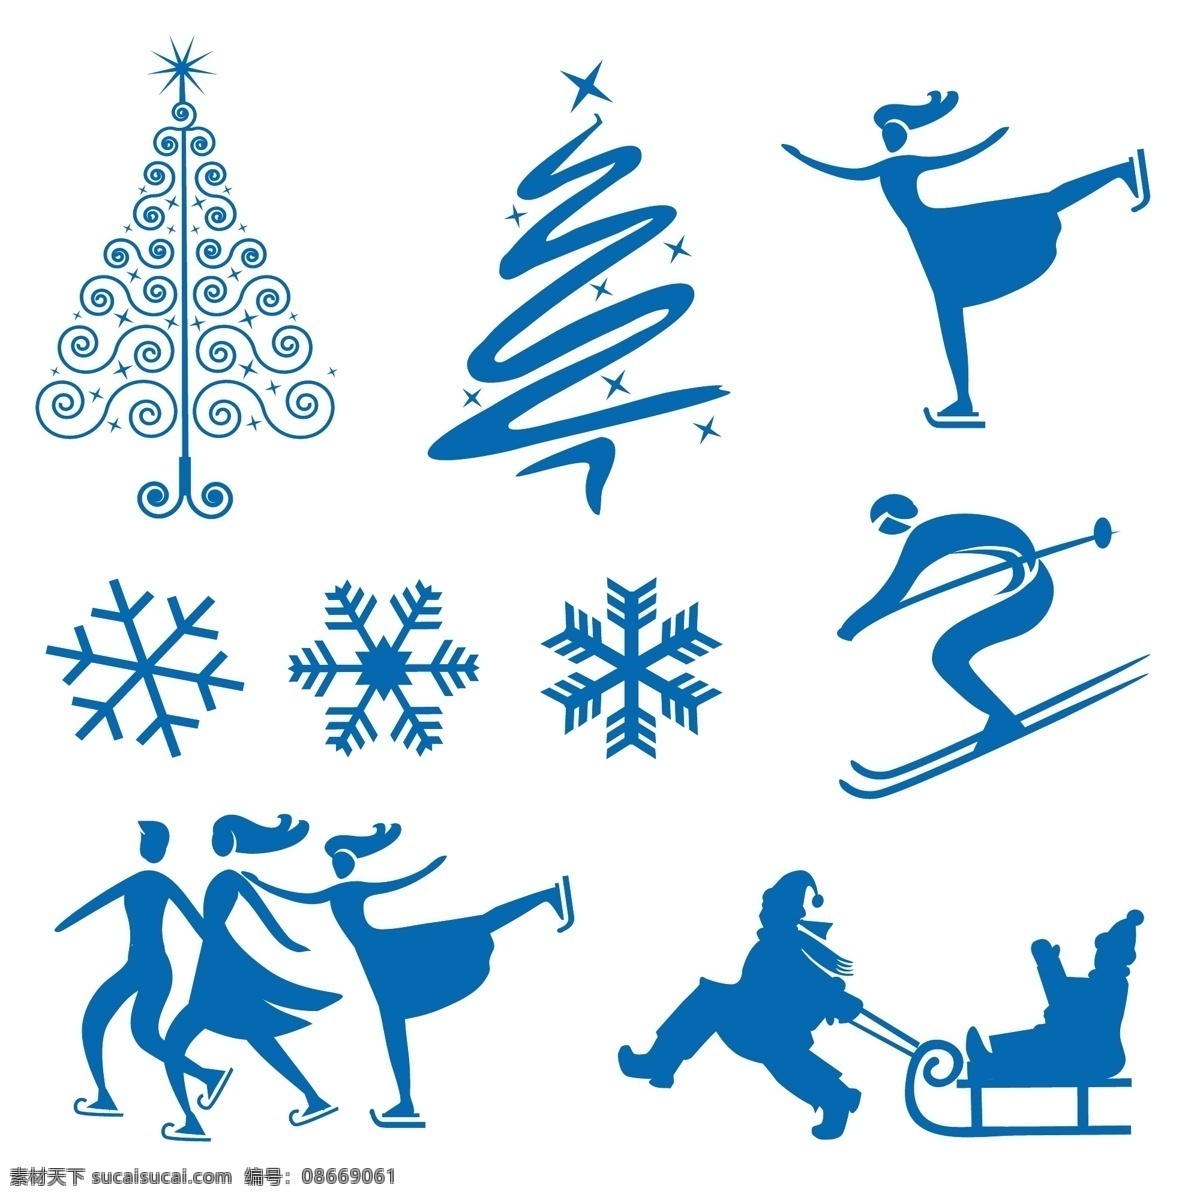 滑雪人物剪影 单板滑雪 飞翔 圣诞树 雪花 滑雪人物 冬季运动 奥林匹克 比赛项目 人物矢量 矢量人物 矢量 人物矢量素材 极限运动 极限 刺激运动 冒险 冒险运动娱乐 刺激 运动剪影 运动员剪影 体育剪影 体育运动 体育 运动 运动员 日常生活 图标 标志 标签 logo 小图标 标识标志图标